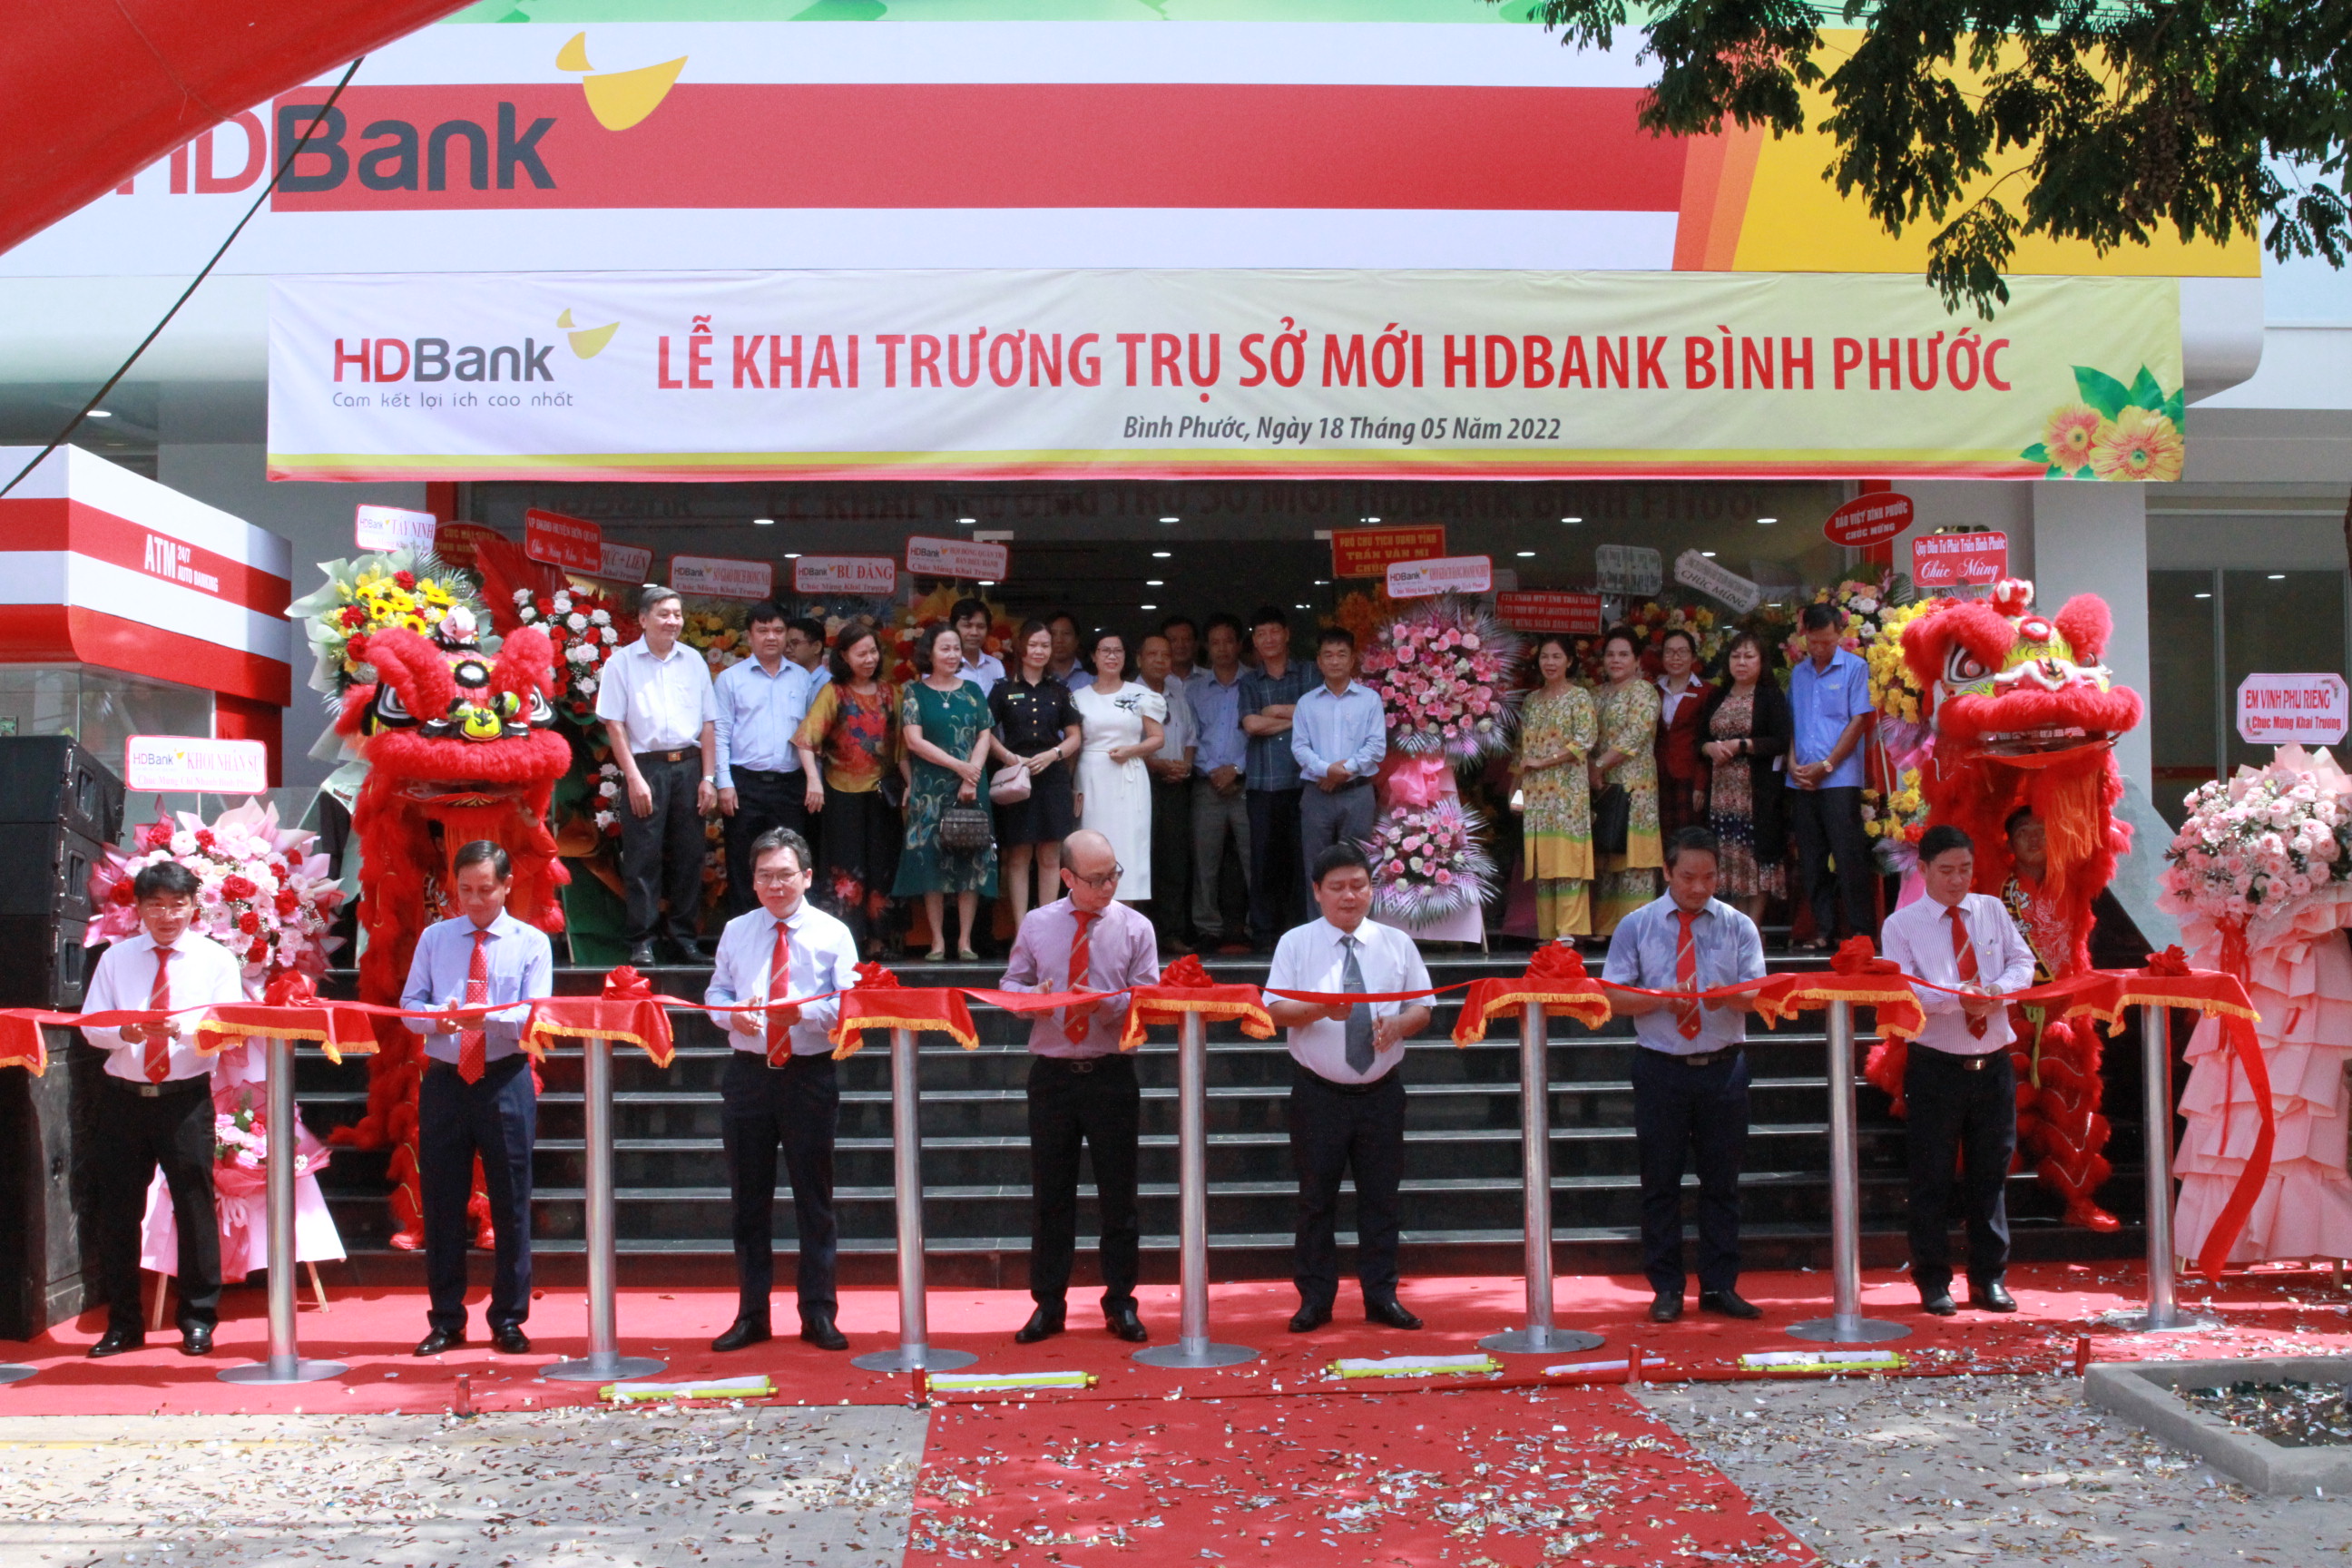 HDBank Bình Phước là một trong những chi nhánh ngân hàng chất lượng tốt nhất trên địa bàn. Nếu bạn muốn tìm kiếm một chỗ để gửi tiền, vay vốn hoặc thực hiện các dịch vụ ngân hàng khác, hãy xem ảnh liên quan để khám phá thêm về tiện ích của ngân hàng này.